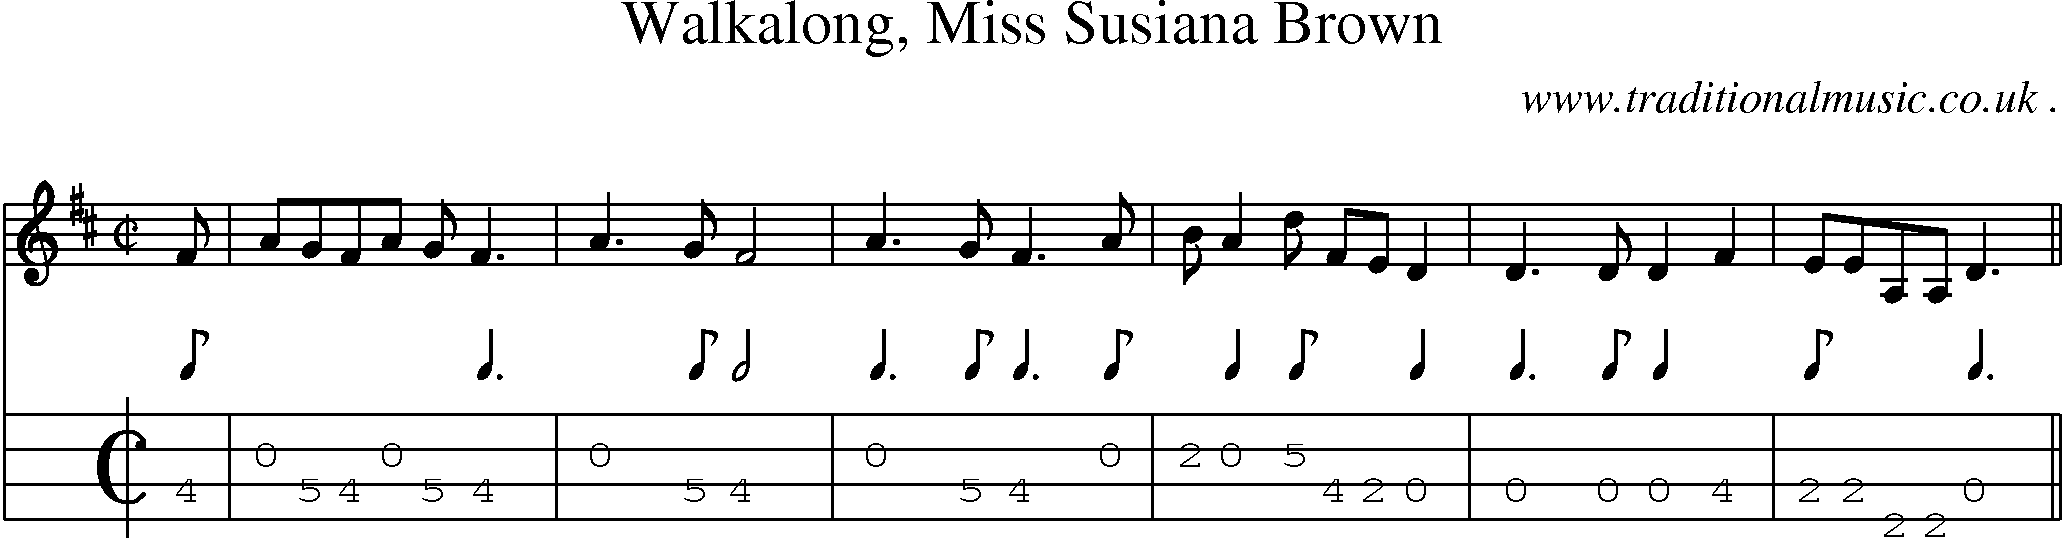 Sheet-Music and Mandolin Tabs for Walkalong Miss Susiana Brown